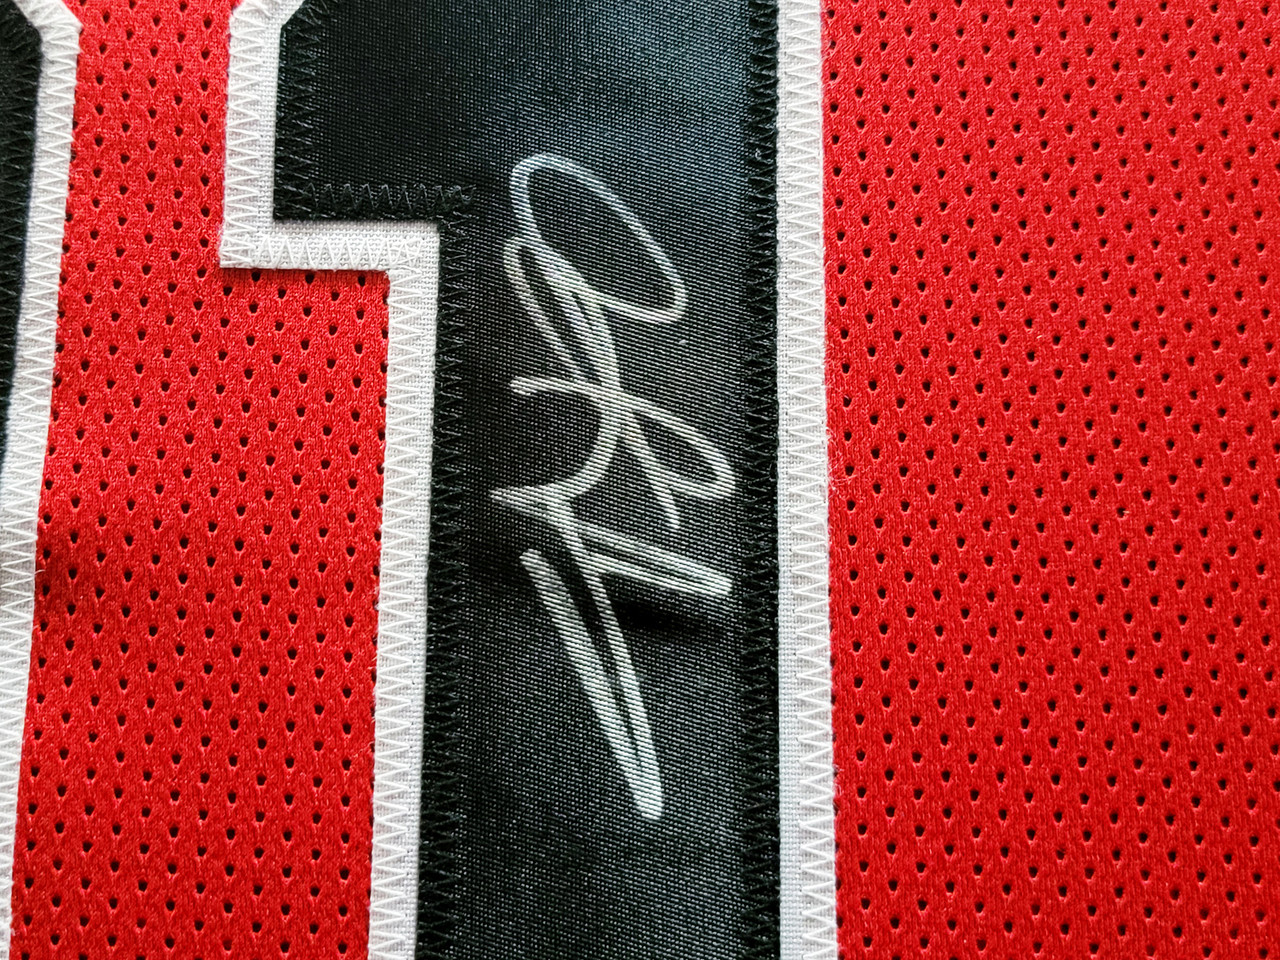 Chicago Bulls Dennis Rodman Autographed Framed Red Jersey Beckett BAS